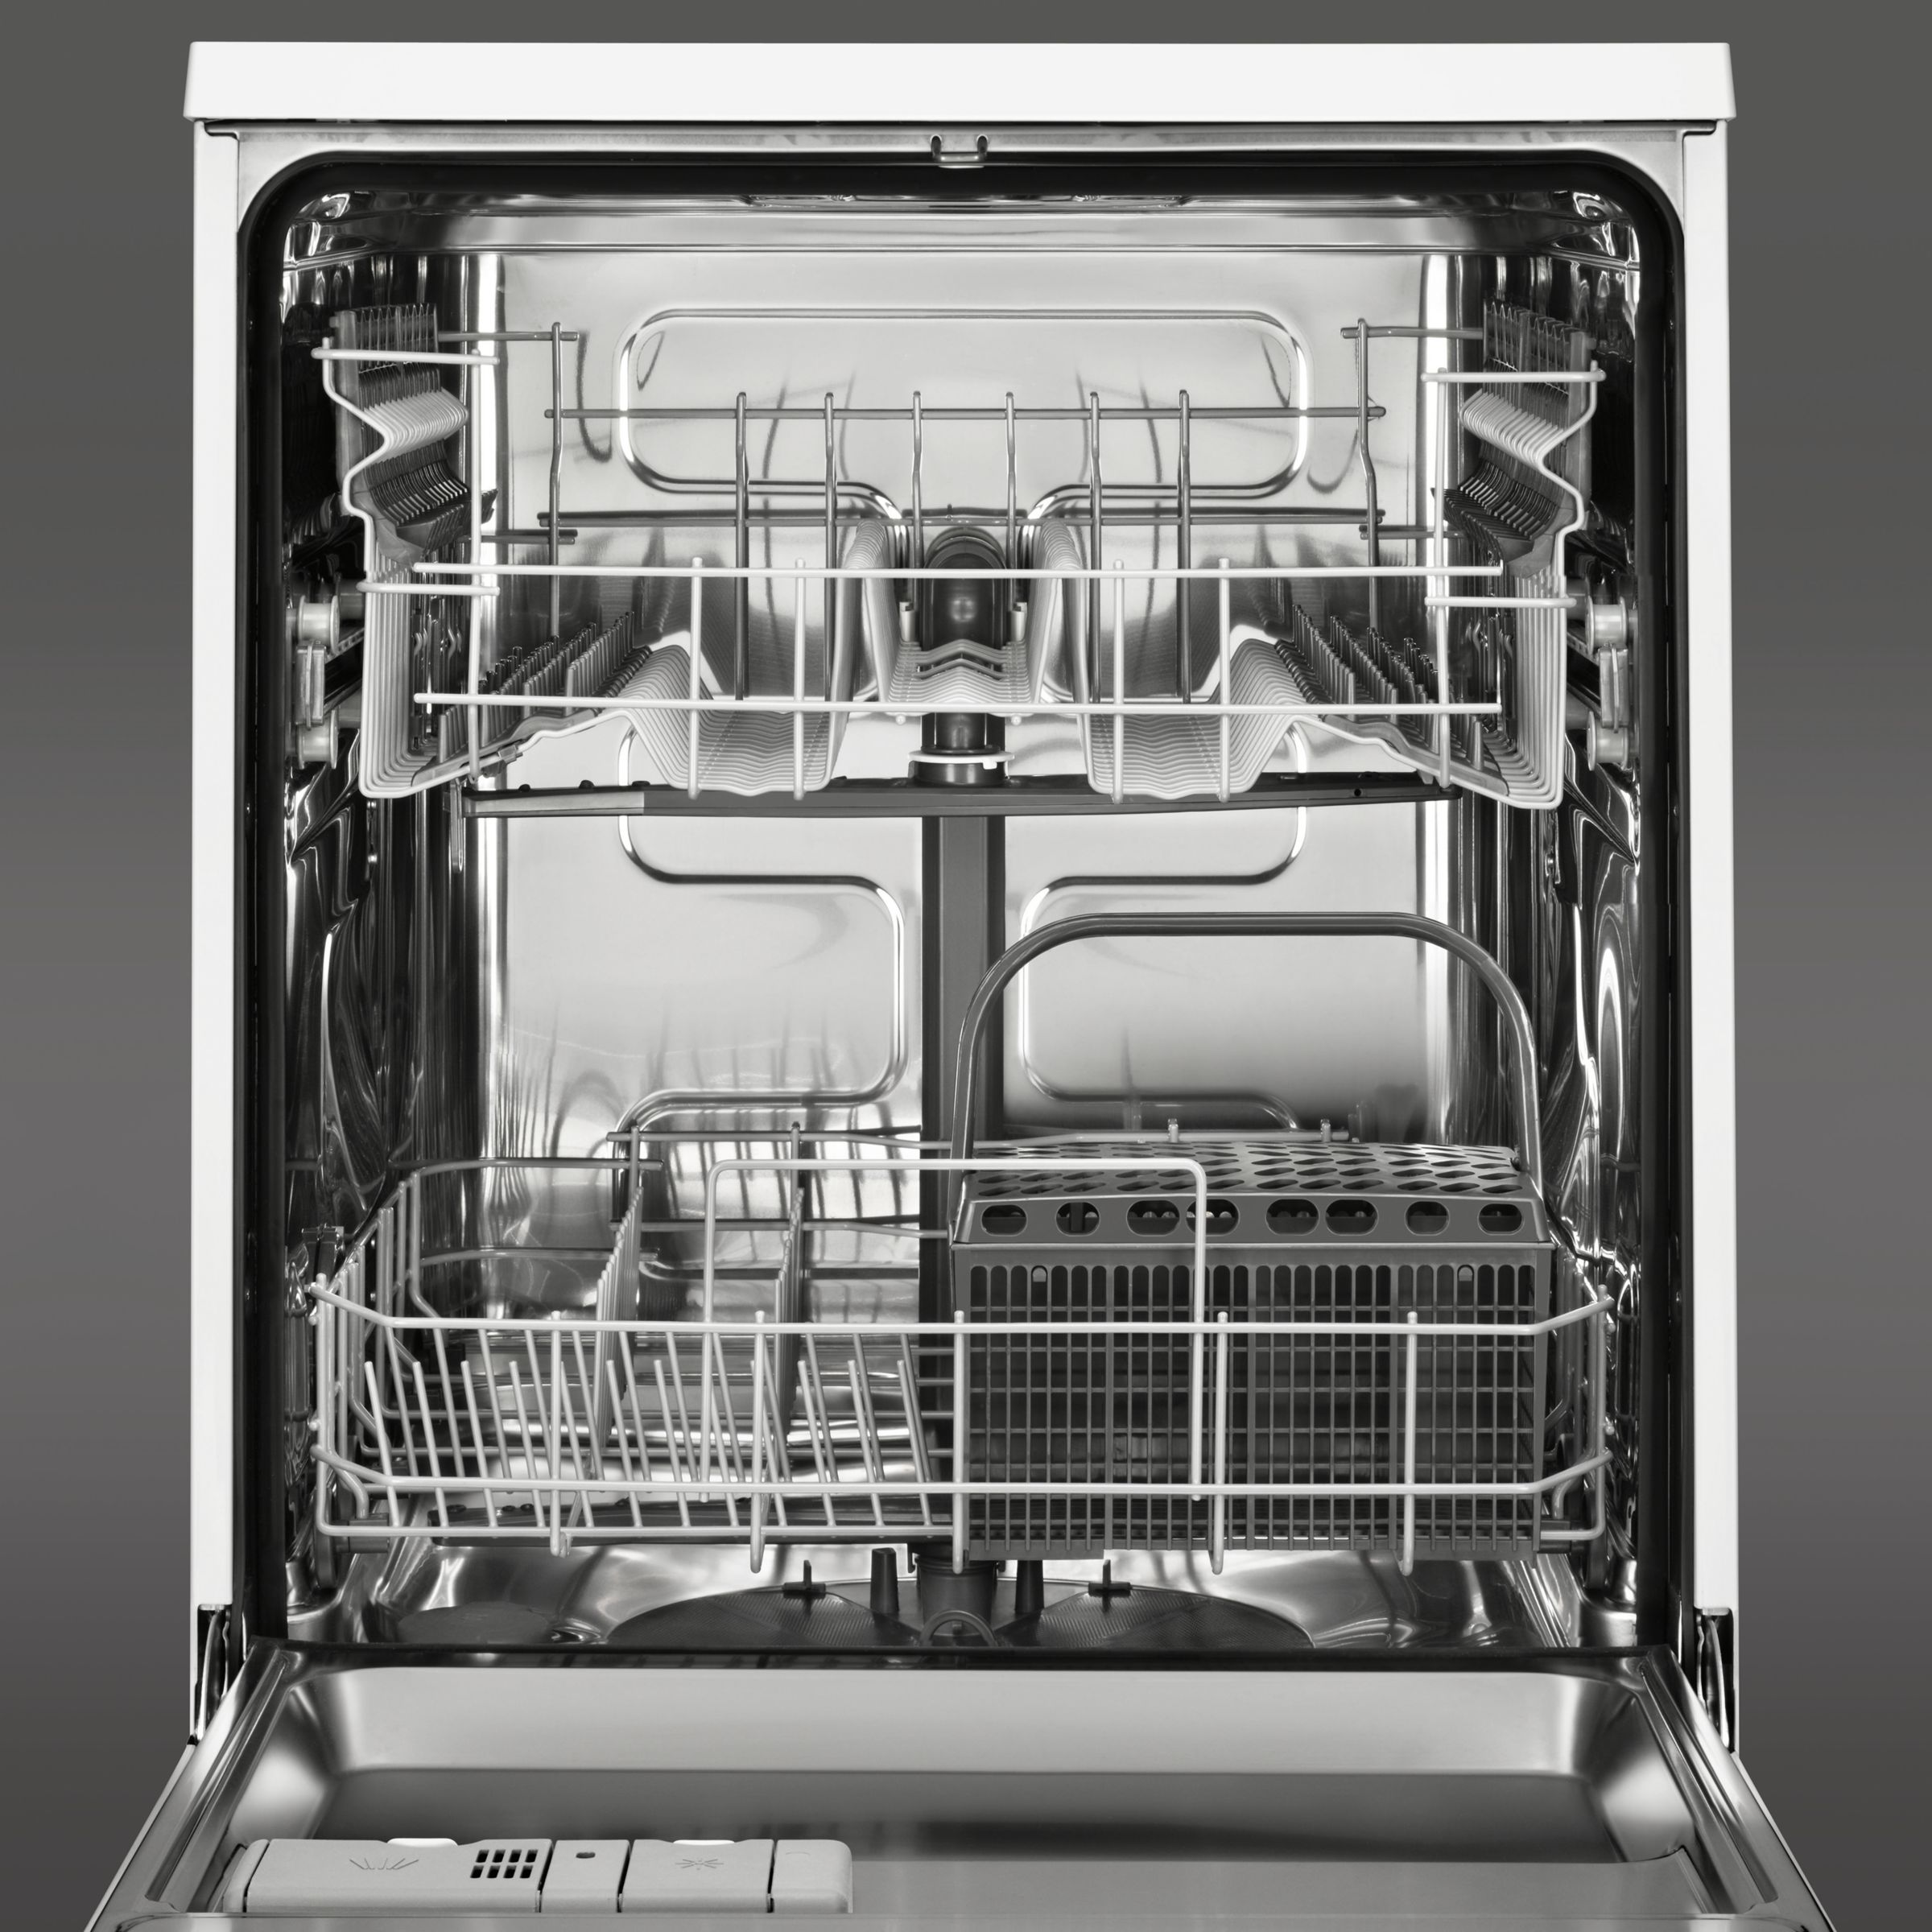 aeg pro intensiv favorit dishwasher